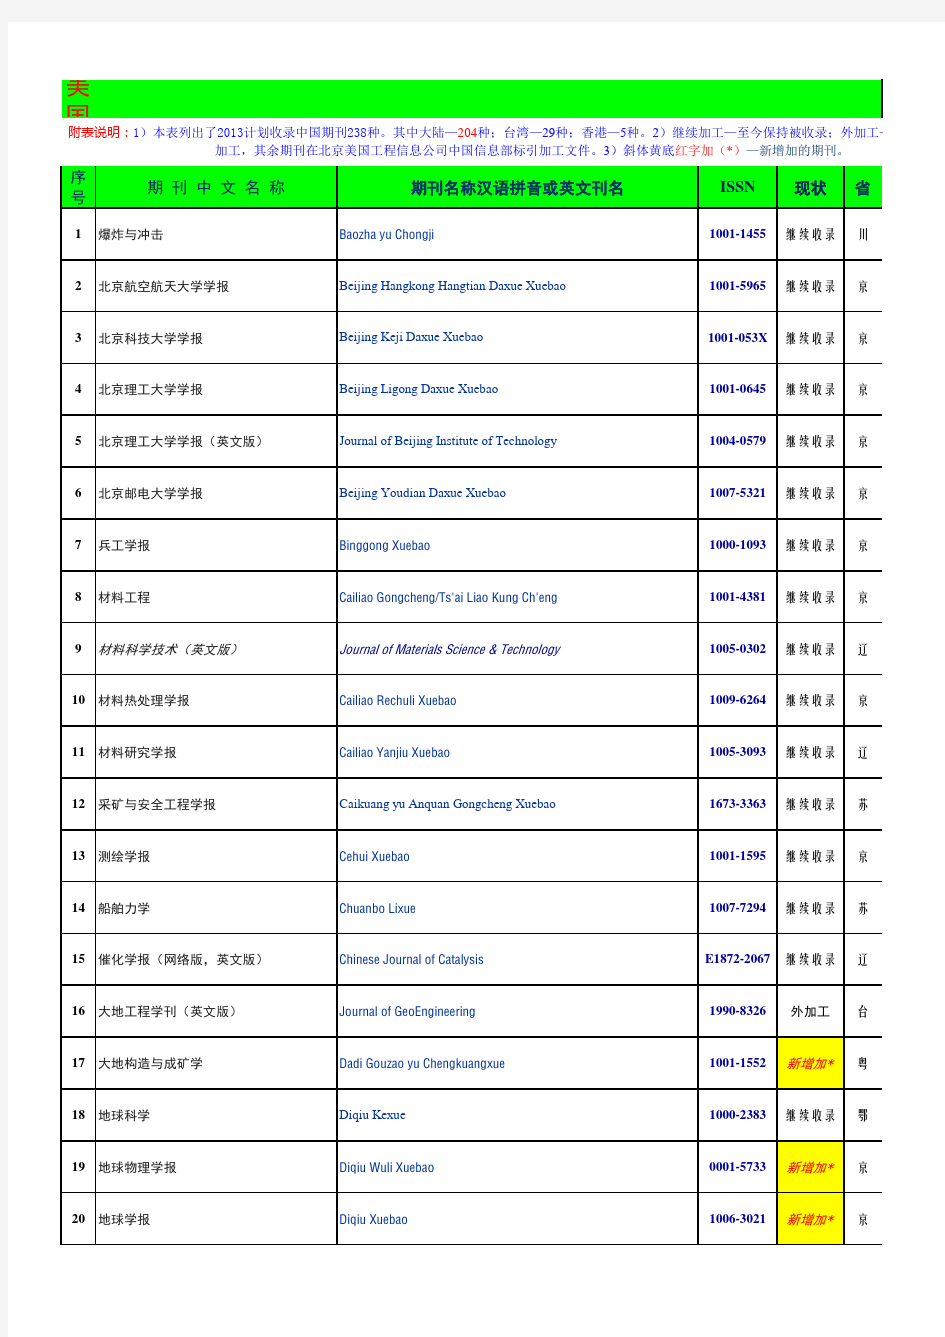 2013年EI收录中国期刊名单(238种,包括台湾及香港,另包括新增加的)